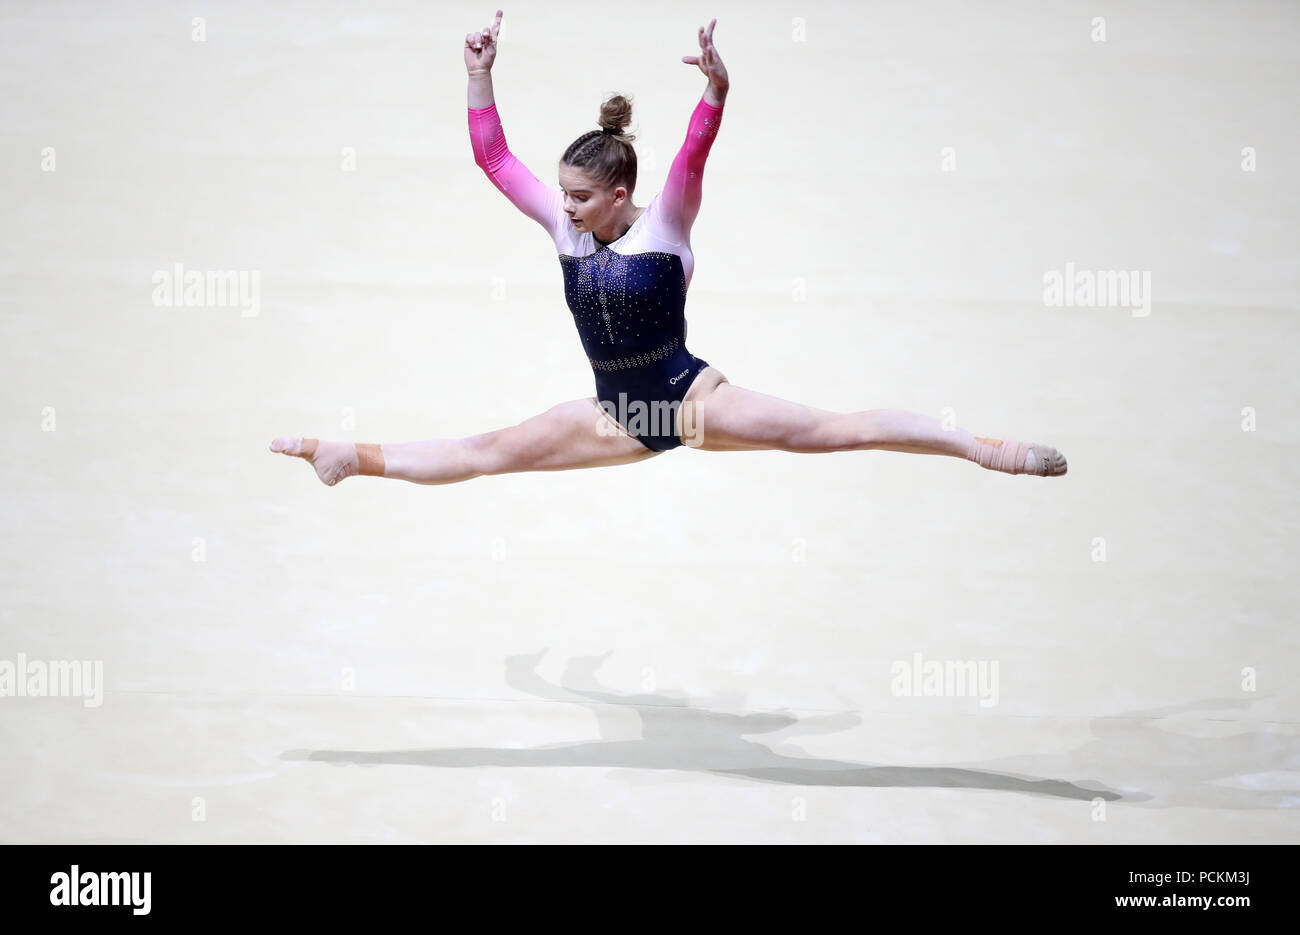 Gran Bretagna Alice Kinsella sul pavimento durante il giorno uno del 2018 Campionati Europei al SSE idro, Glasgow. Foto Stock